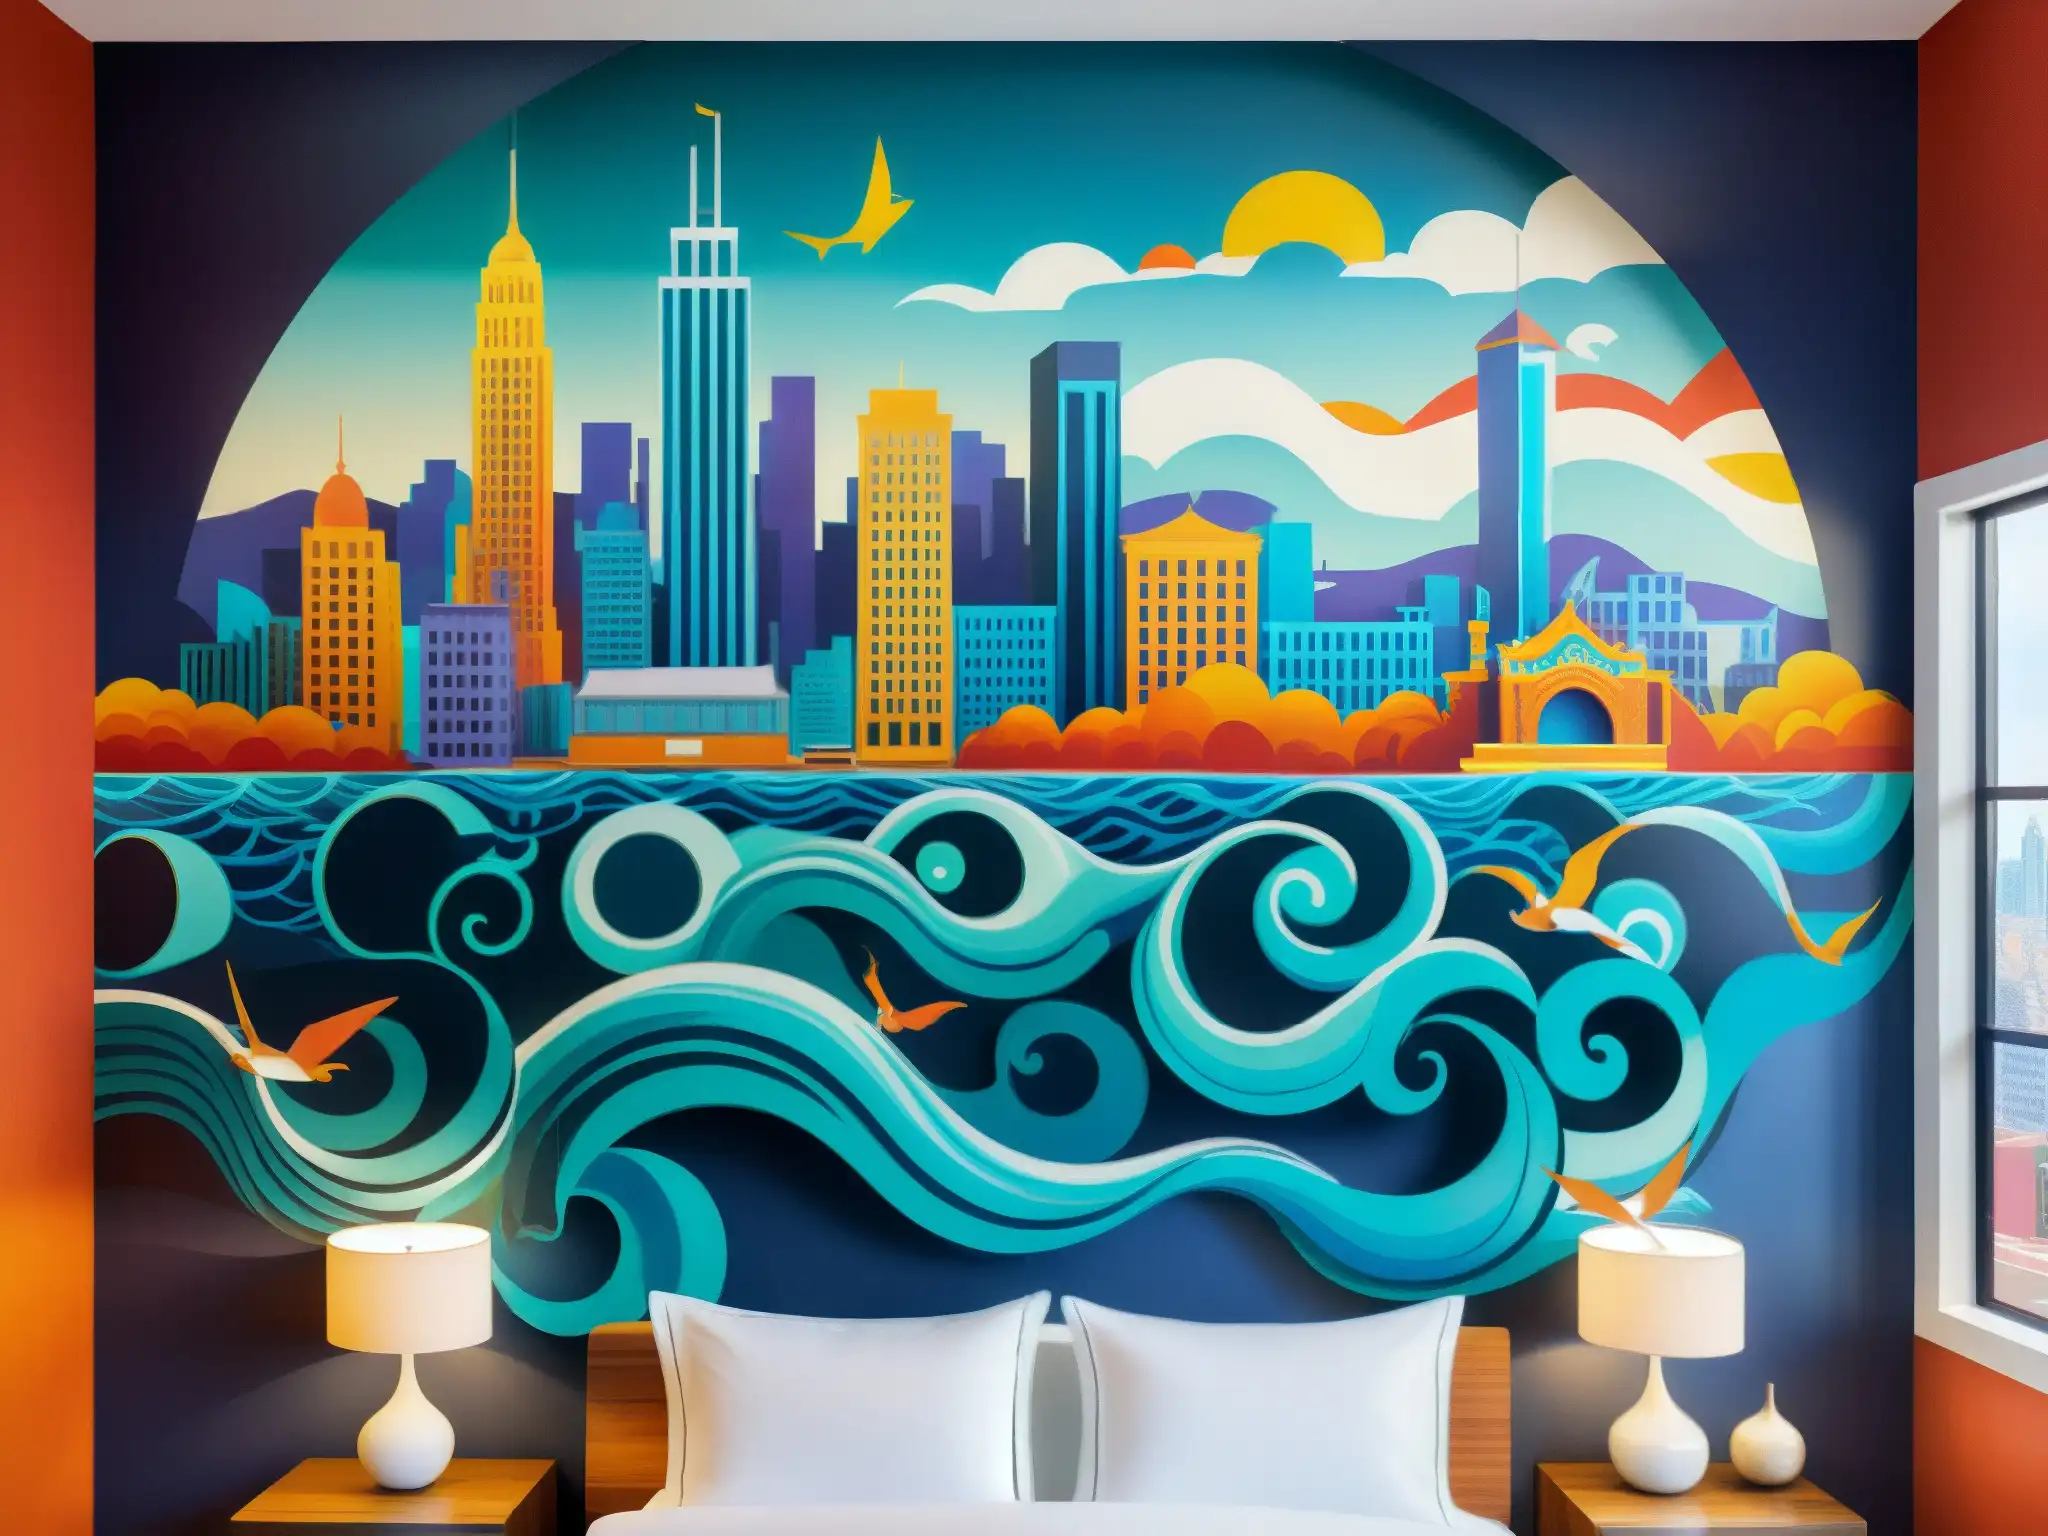 Una impresionante pintura mural que muestra un grupo de sirenas místicas emergiendo de las profundidades de un vibrante paisaje urbano